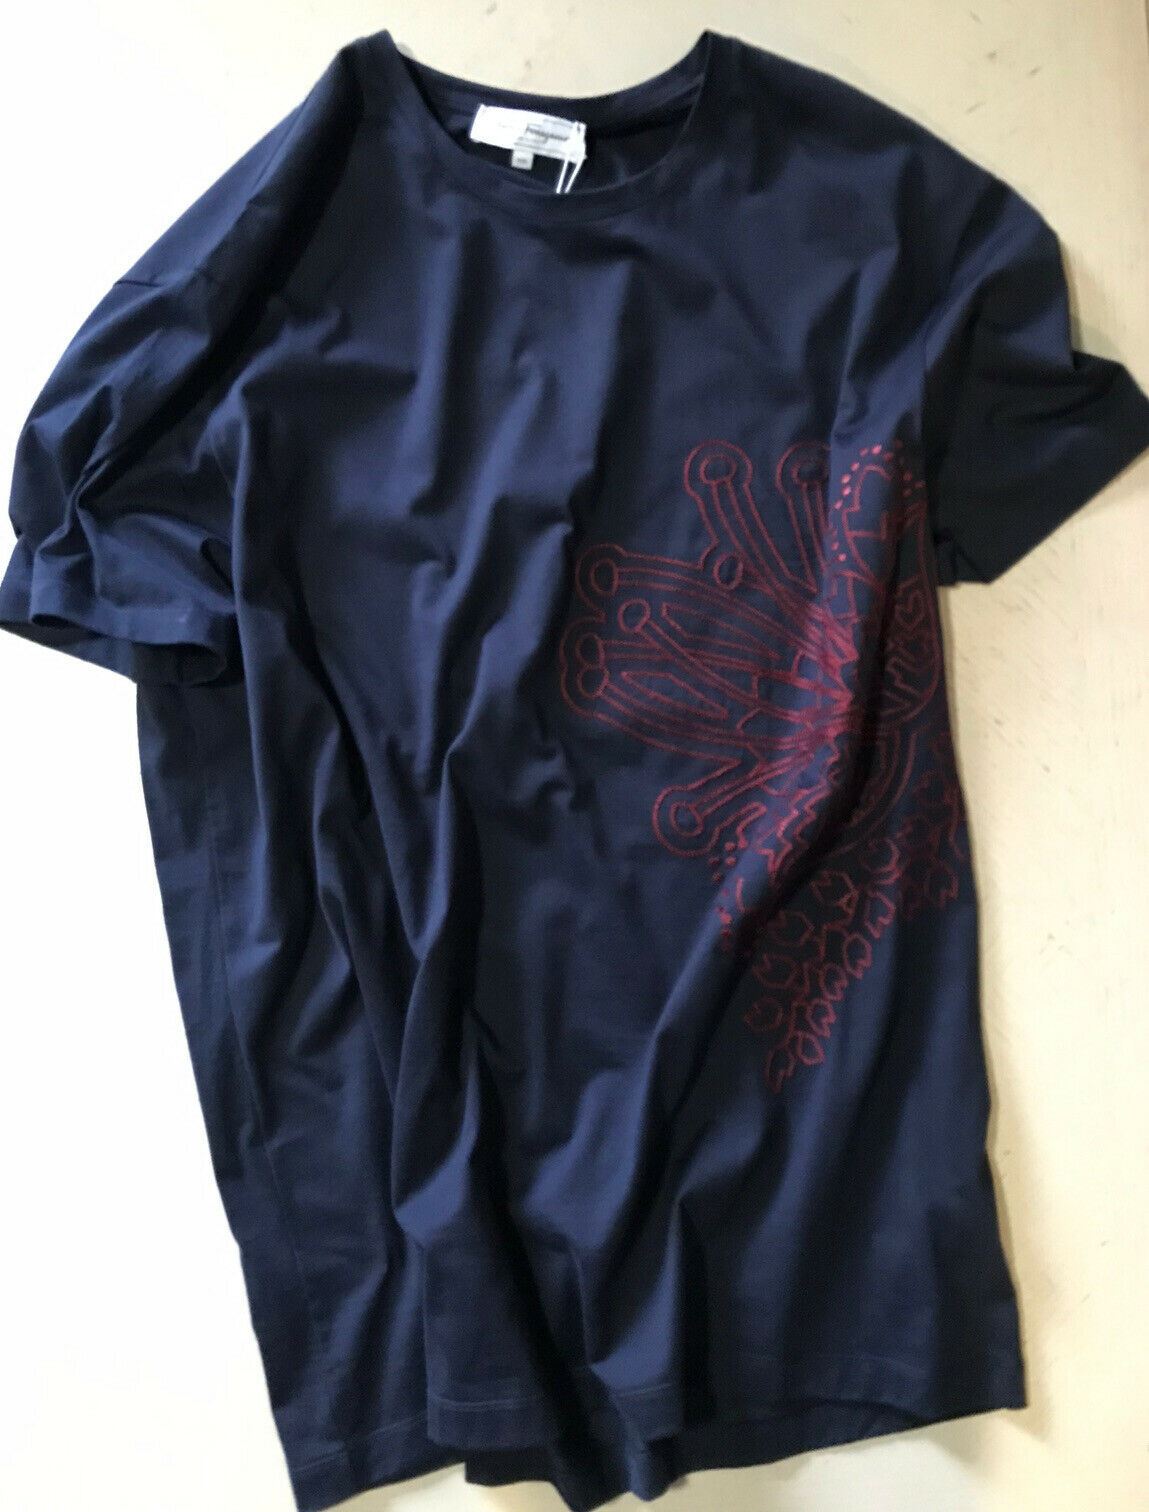 Новая мужская футболка Salvatore Ferragamo с разными рукавами стоимостью 310 долларов, темно-синяя, XXL, Италия